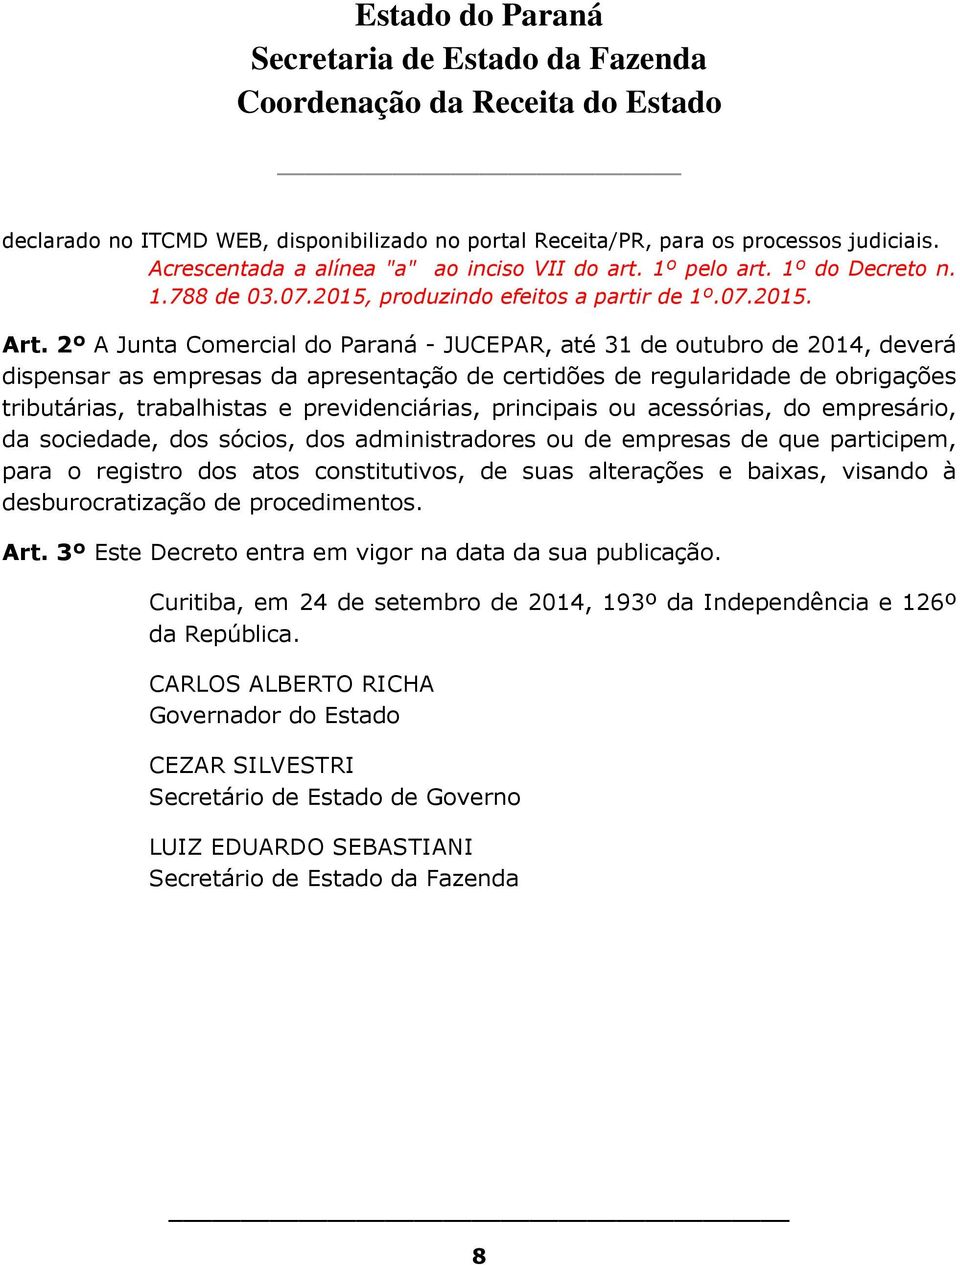 2º A Junta Comercial do Paraná - JUCEPAR, até 31 de outubro de 2014, deverá dispensar as empresas da apresentação de certidões de regularidade de obrigações tributárias, trabalhistas e